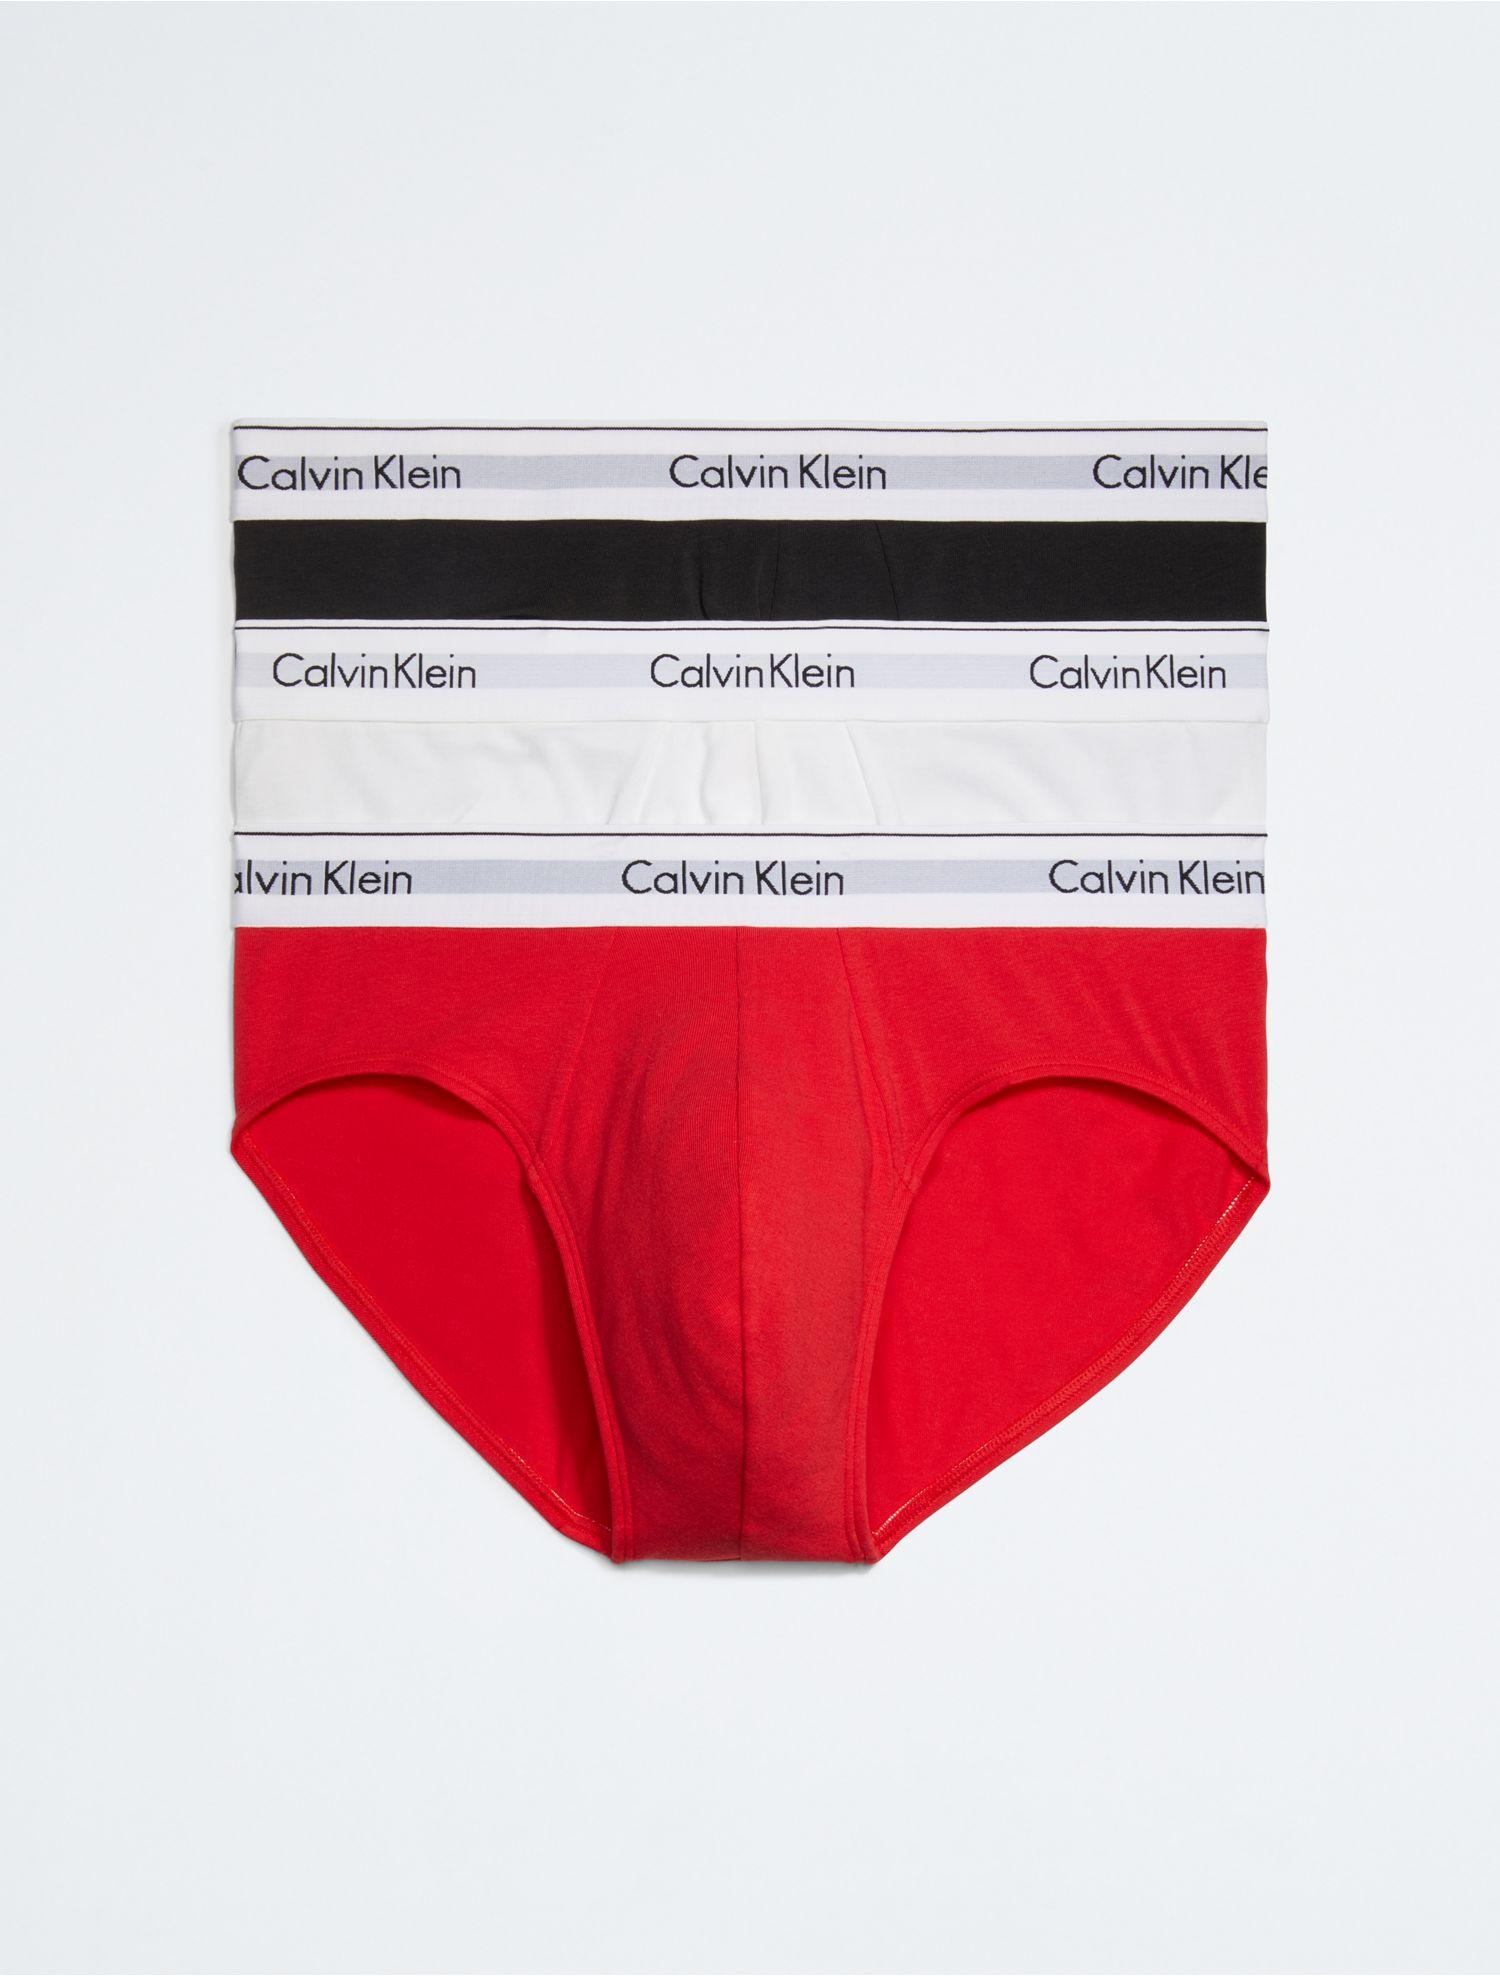 Calvin Klein, Hipster Brief 3 Pack